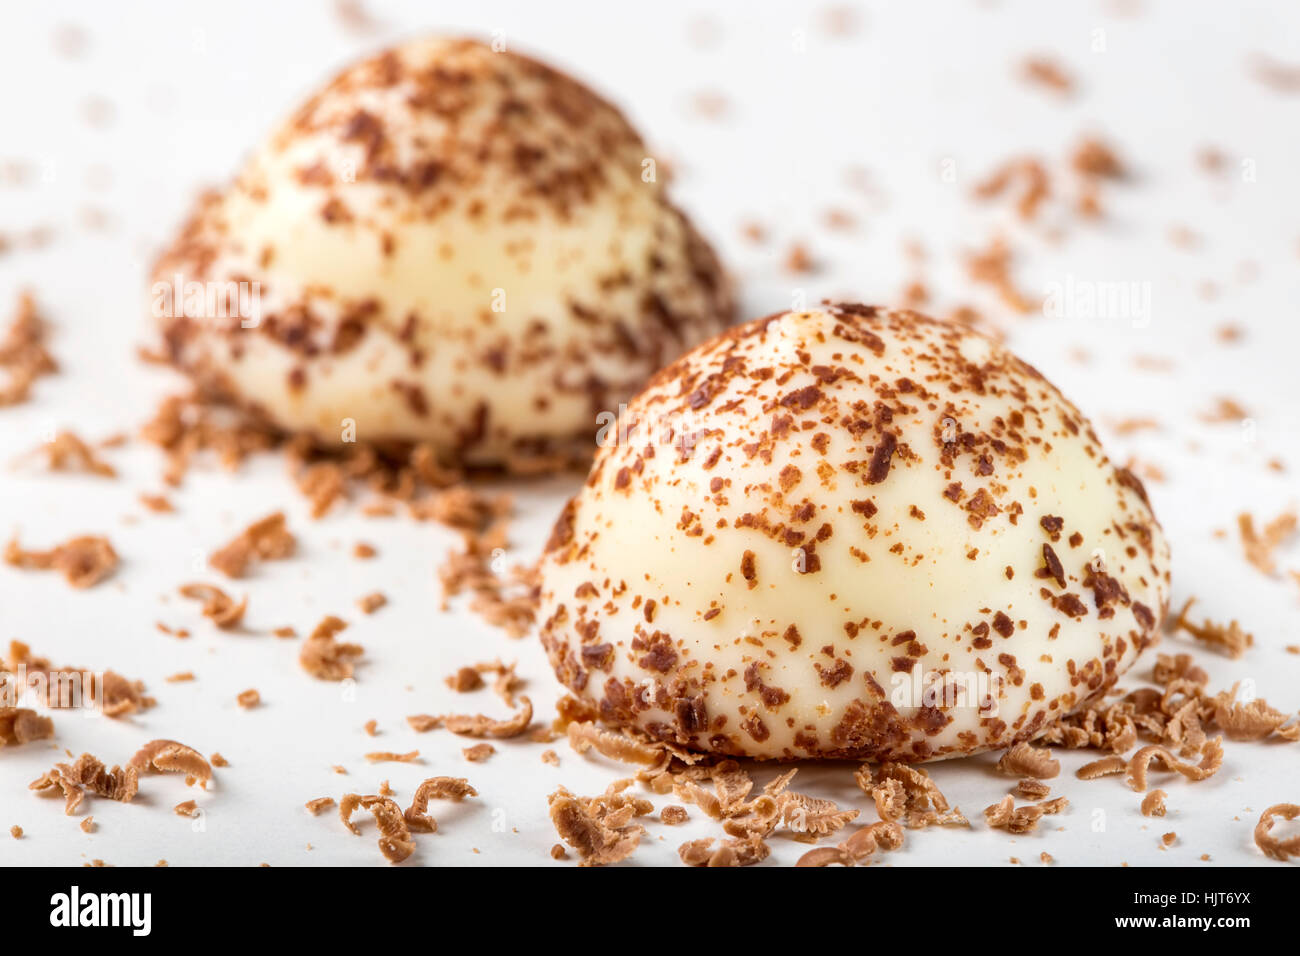 Due vaniglia pearl caramelle e cioccolato fondente grattugiato su sfondo bianco Foto Stock